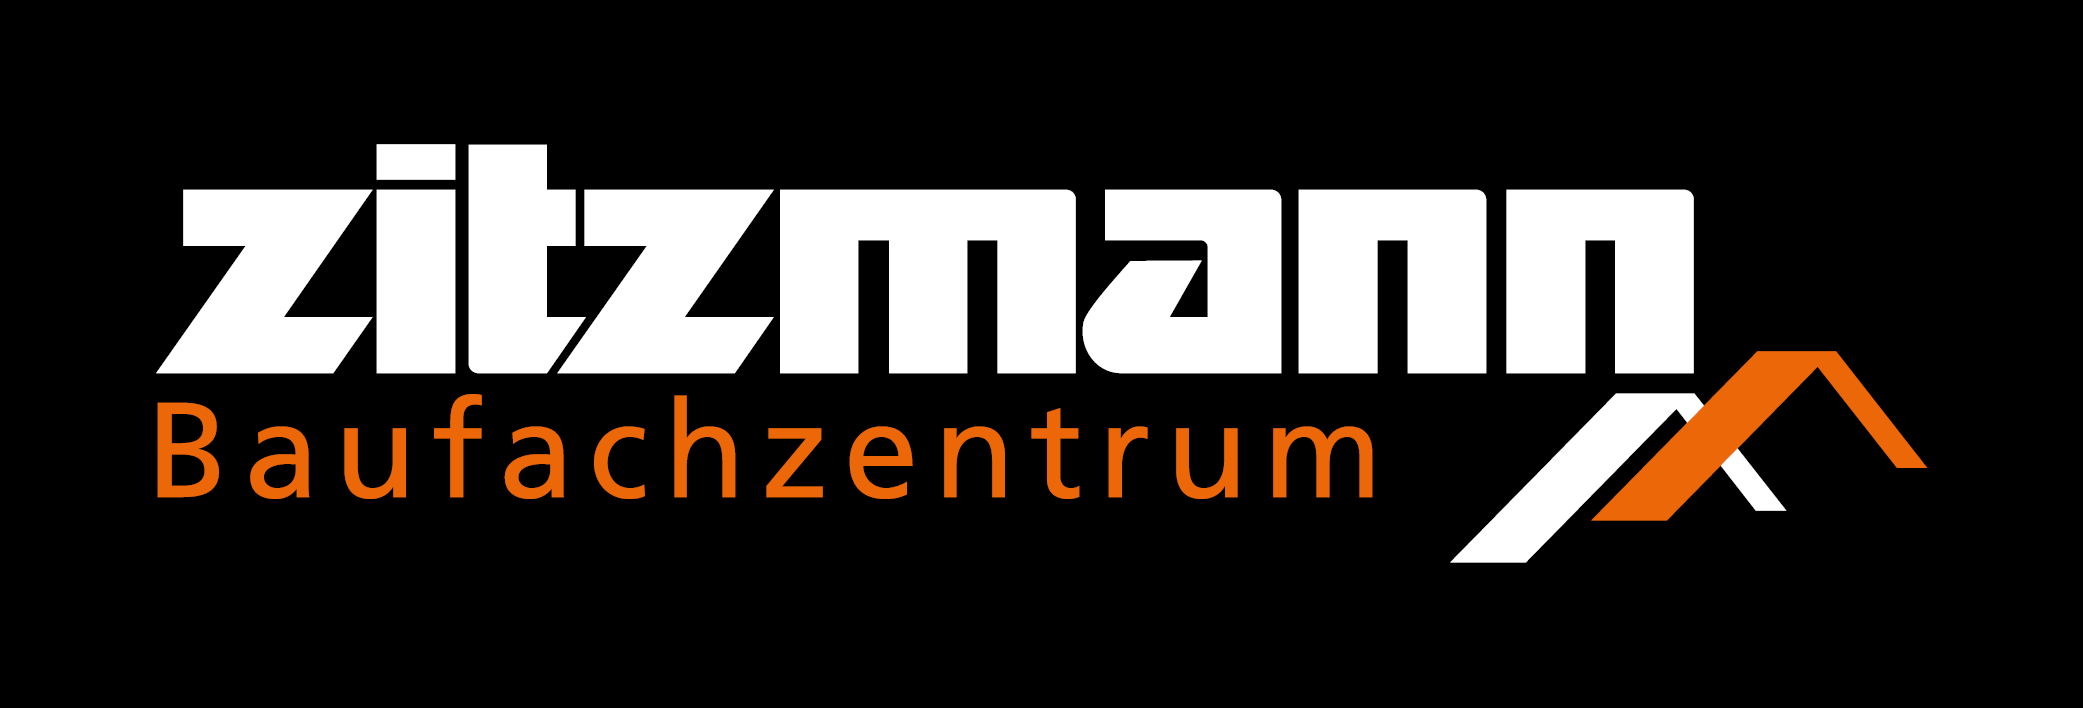 Zitzmann